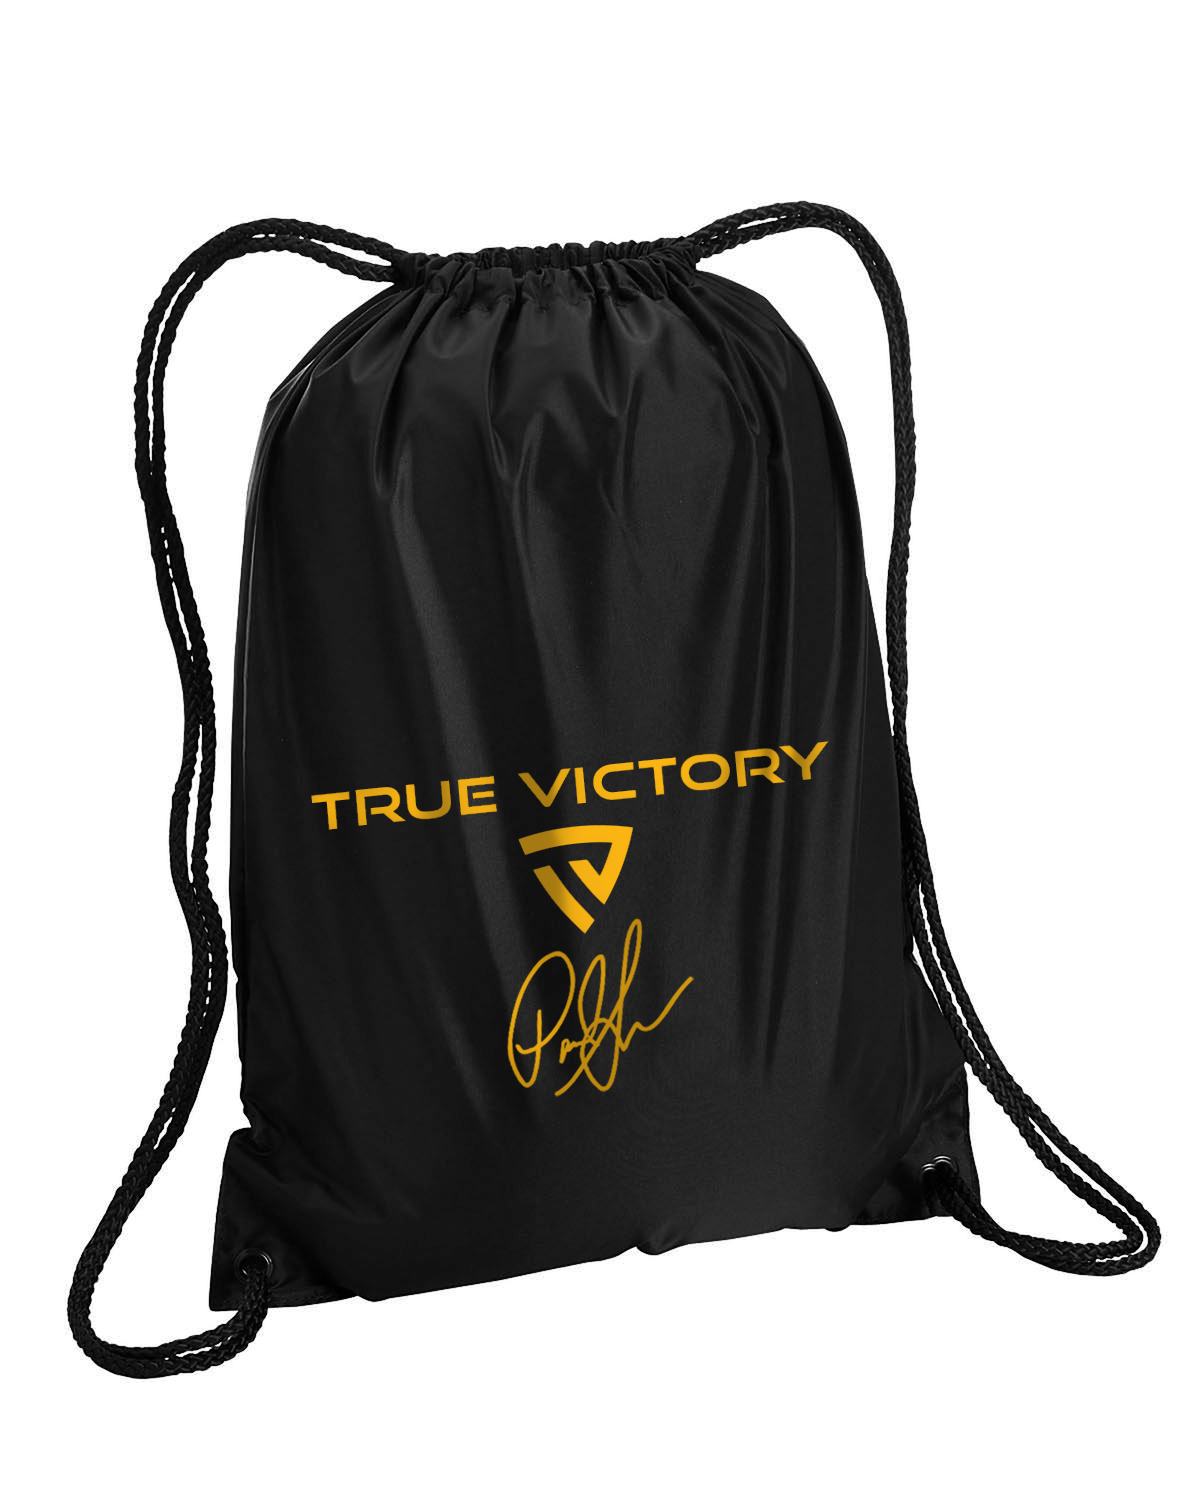 Victorious X Paul Skenes Signature Series Black Drawstring Backpack